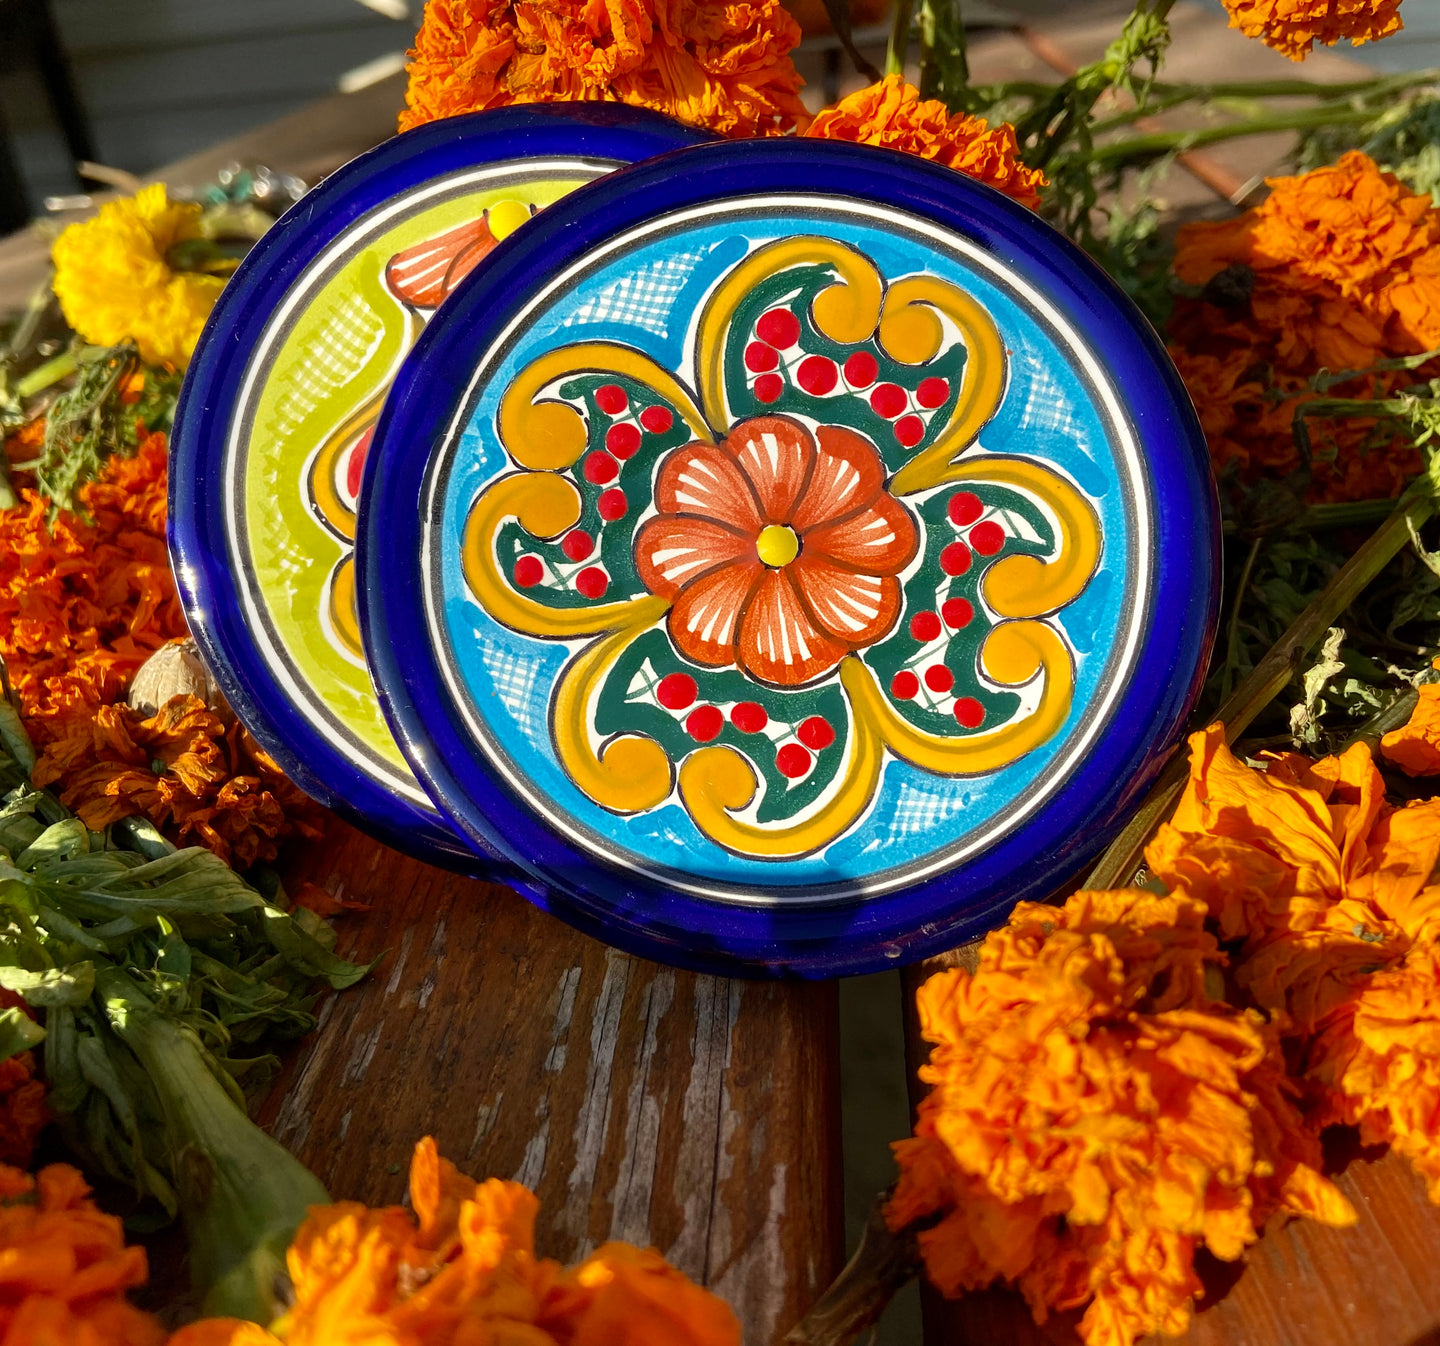 Colorful Mexican Talavera Mini-Plates